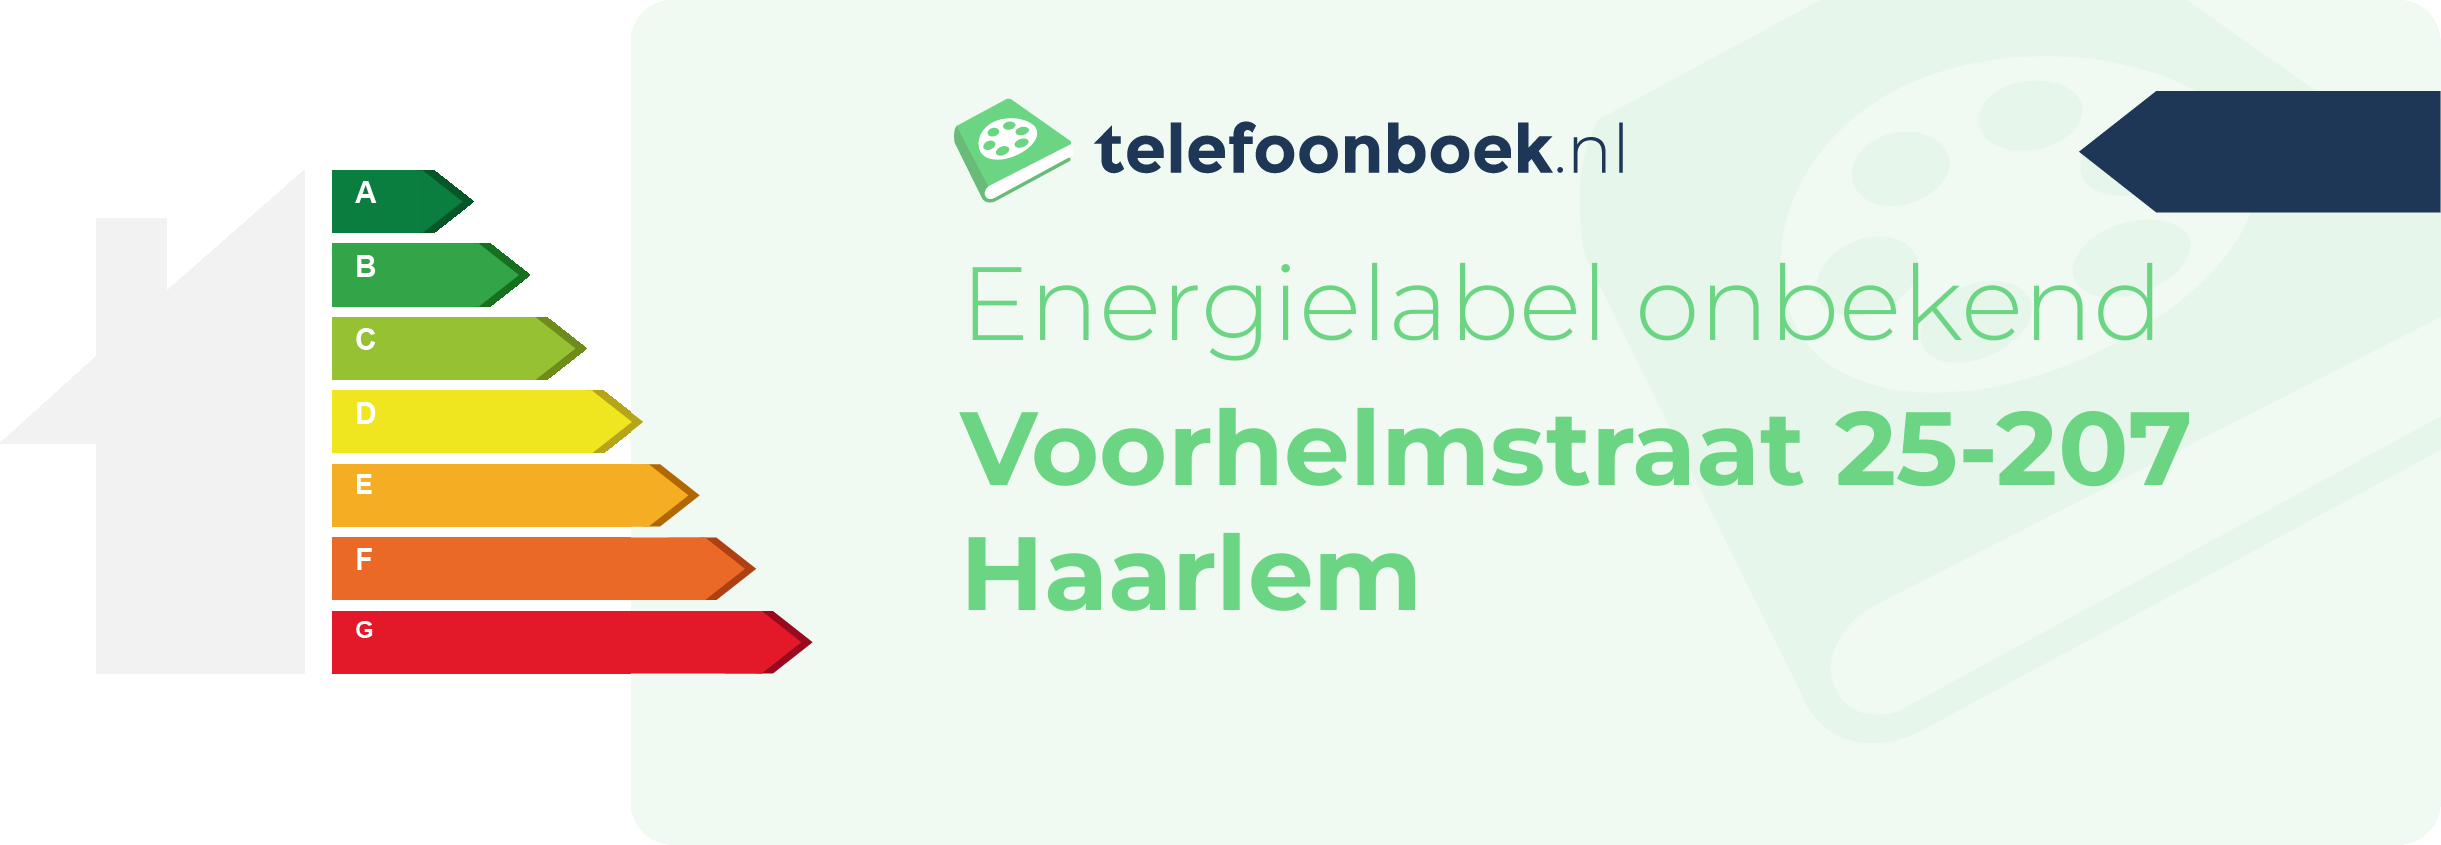 Energielabel Voorhelmstraat 25-207 Haarlem